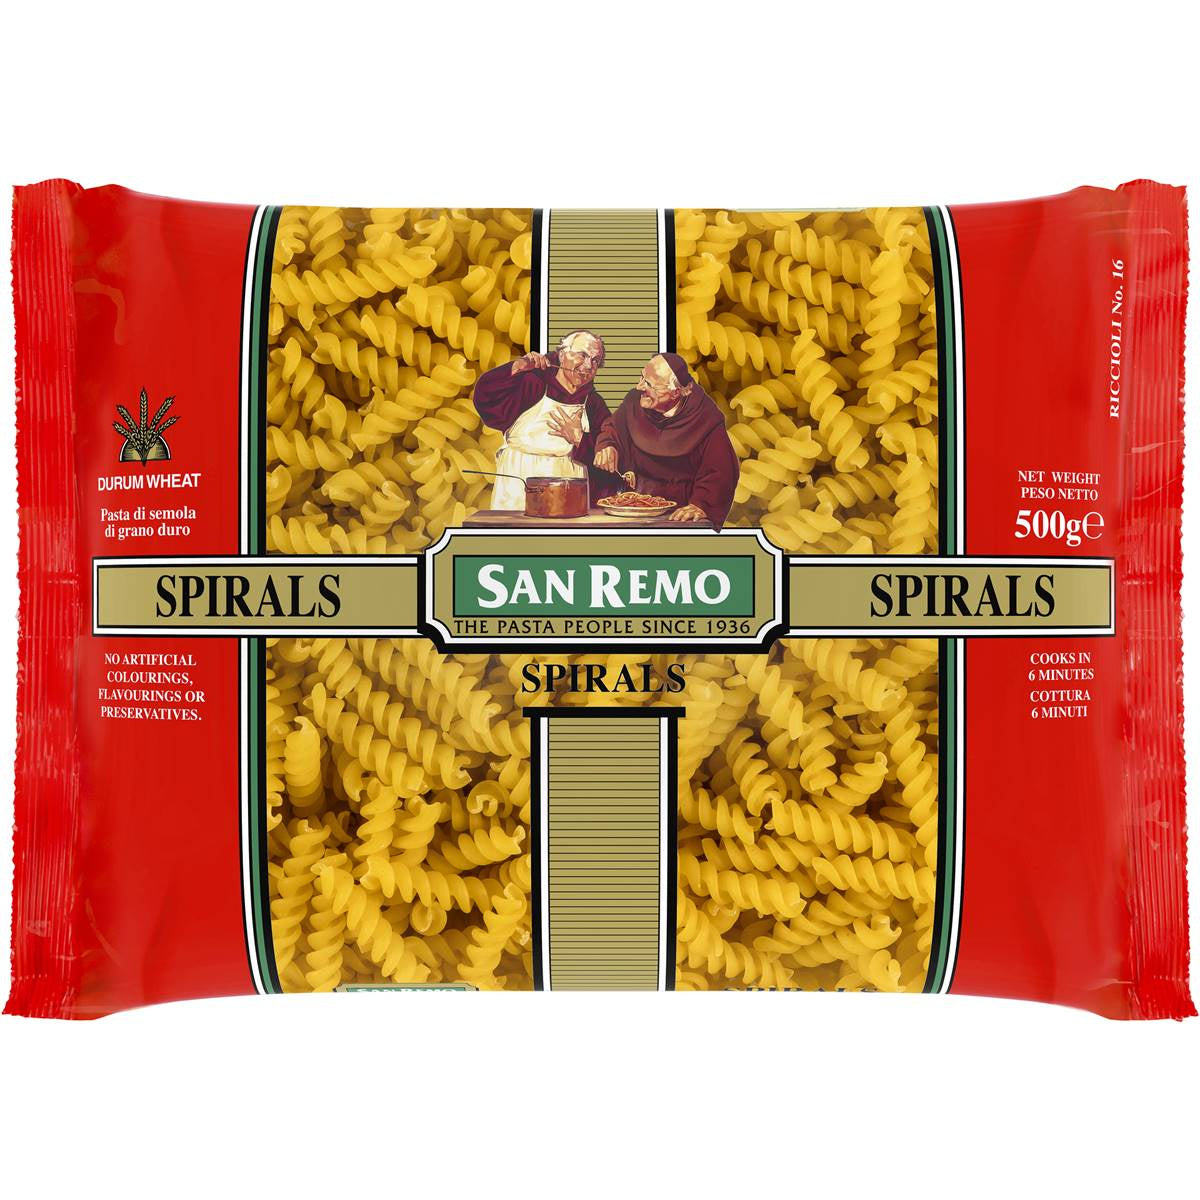 San Remo Spirals 500g